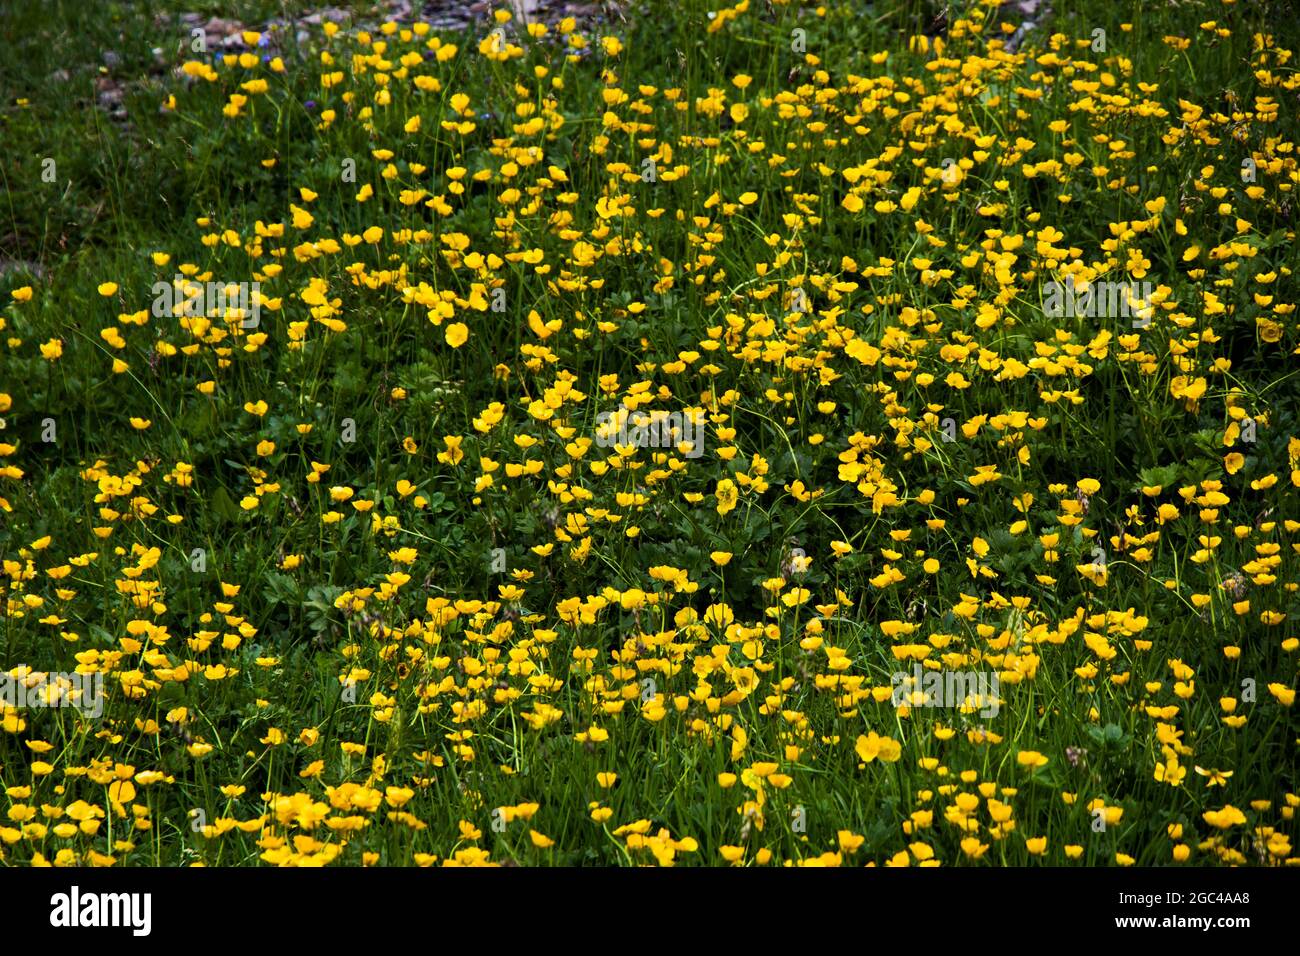 Bella vista di piccoli fiori gialli che fioriscono nel campo Foto Stock